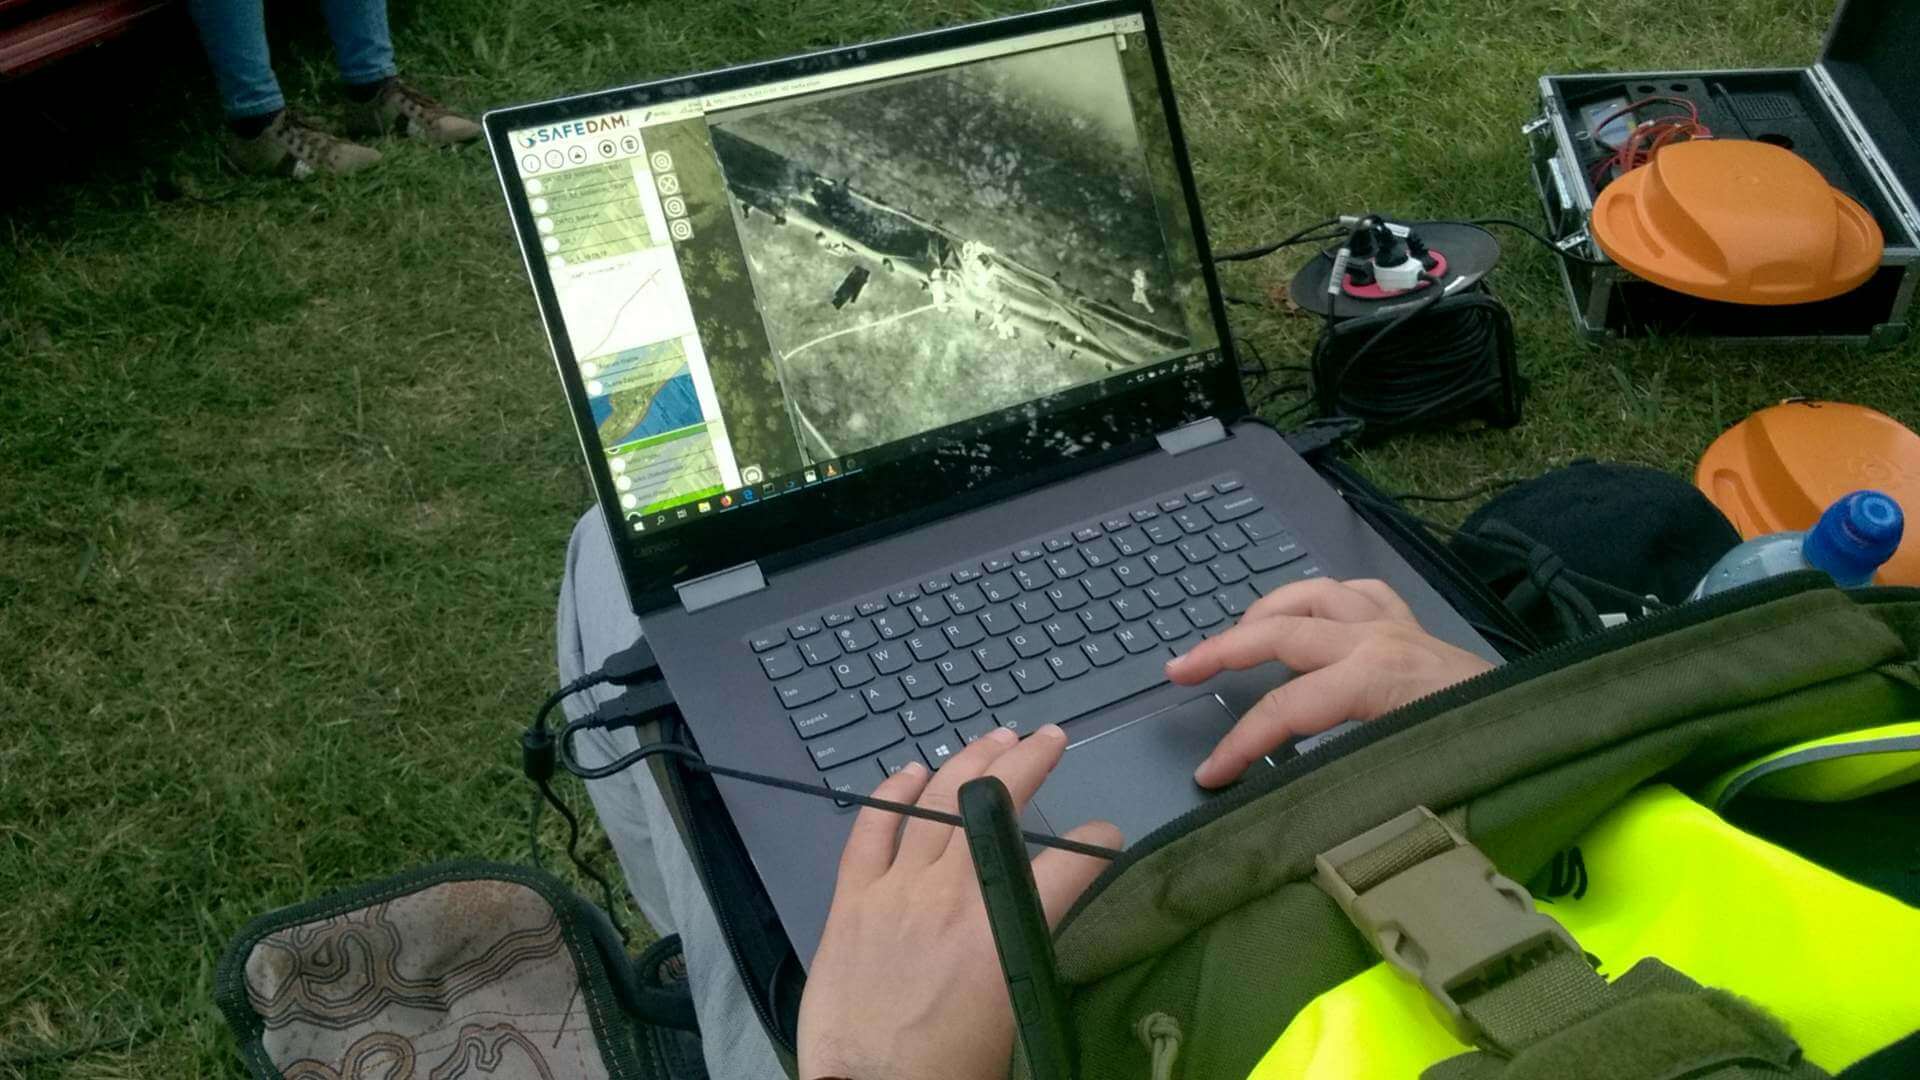 Mężczyzna przegląda w terenie na laptopie dane z systemu SAFEDAM